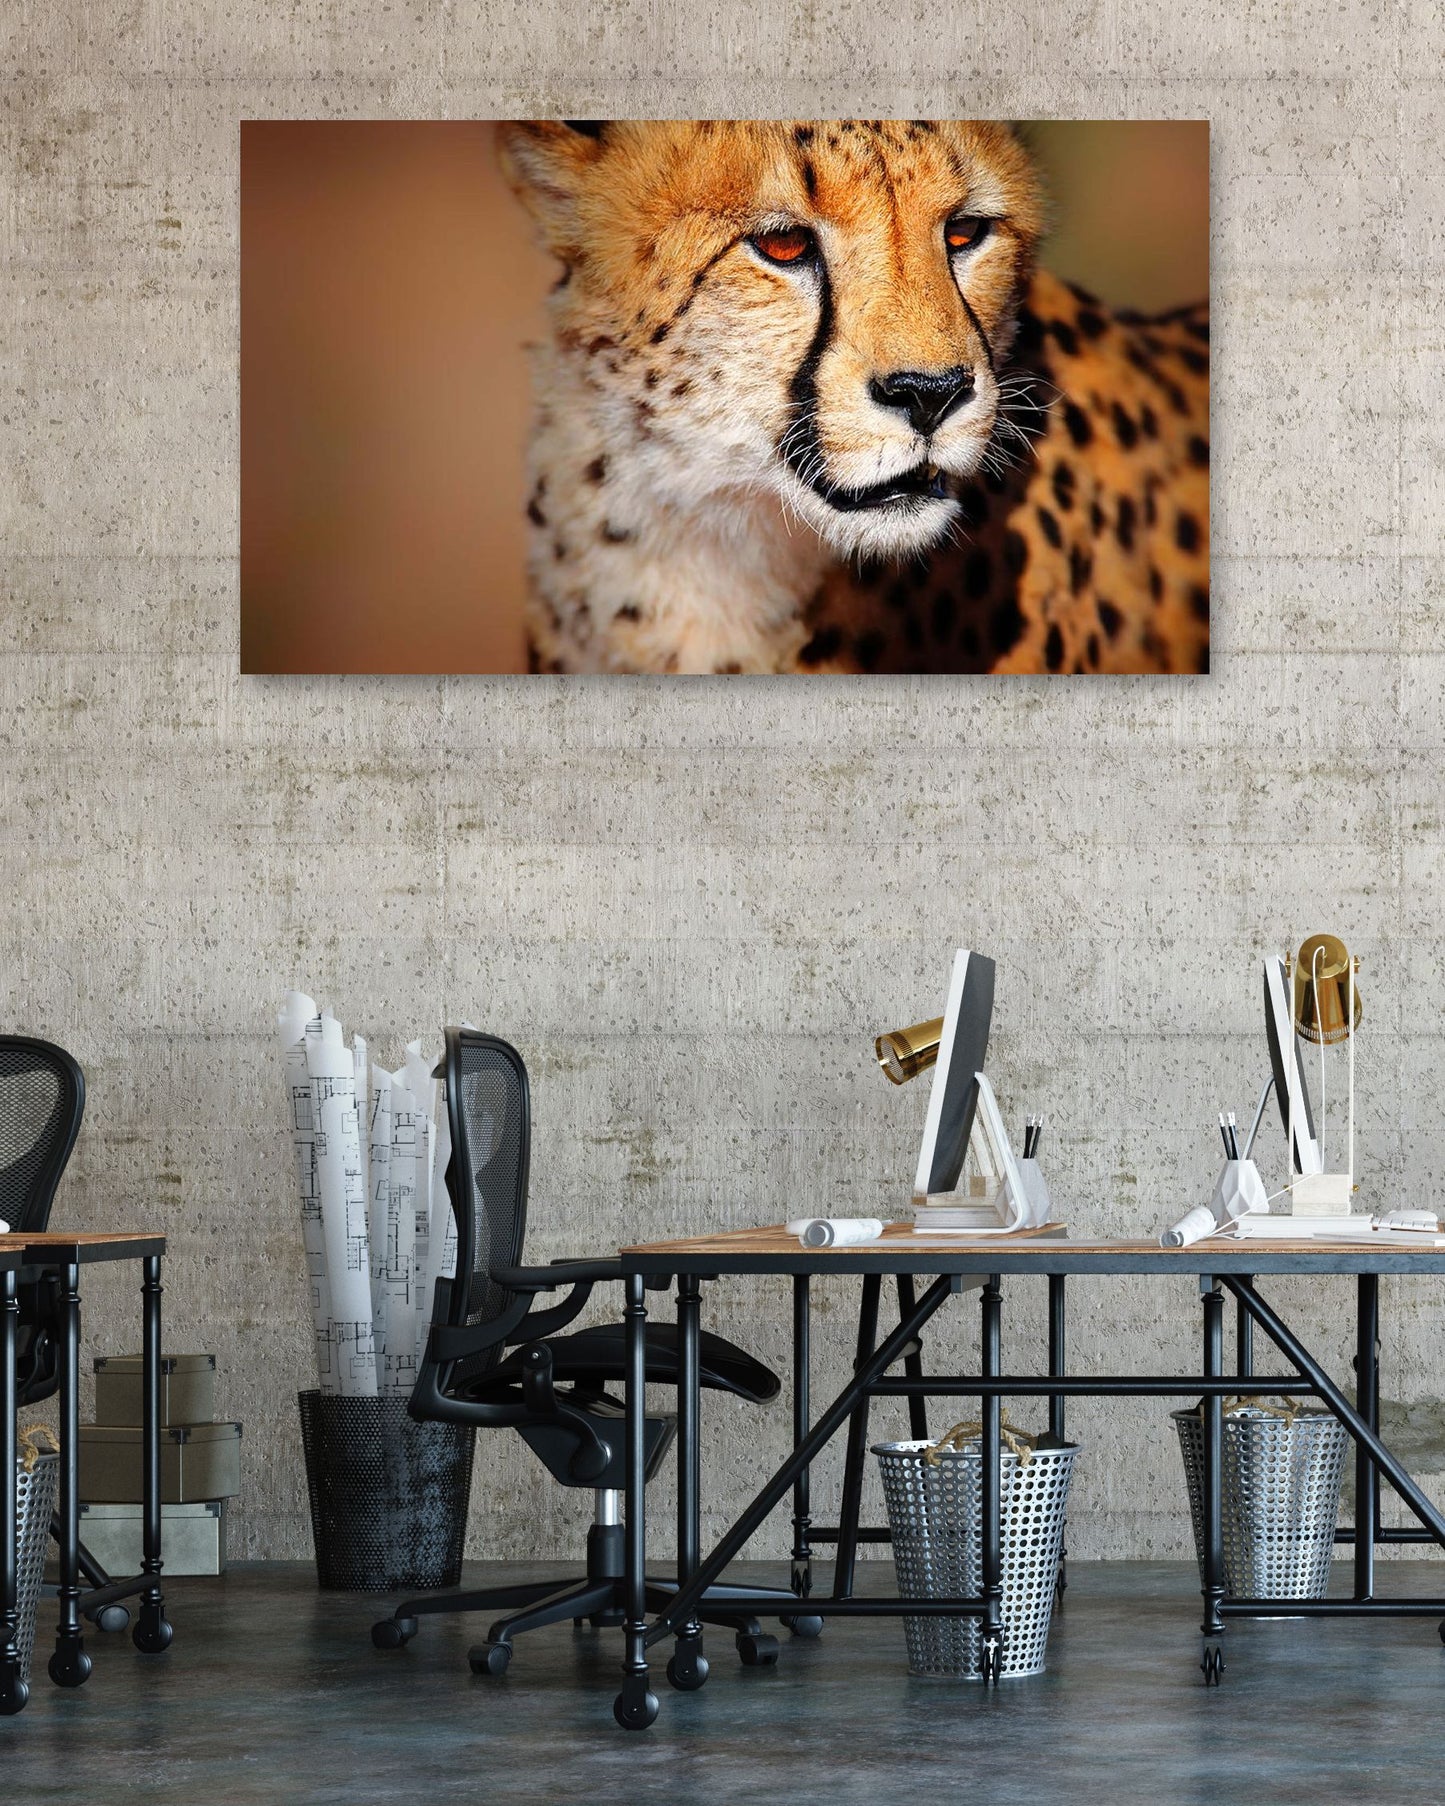 Cheetah portrait - @chusna